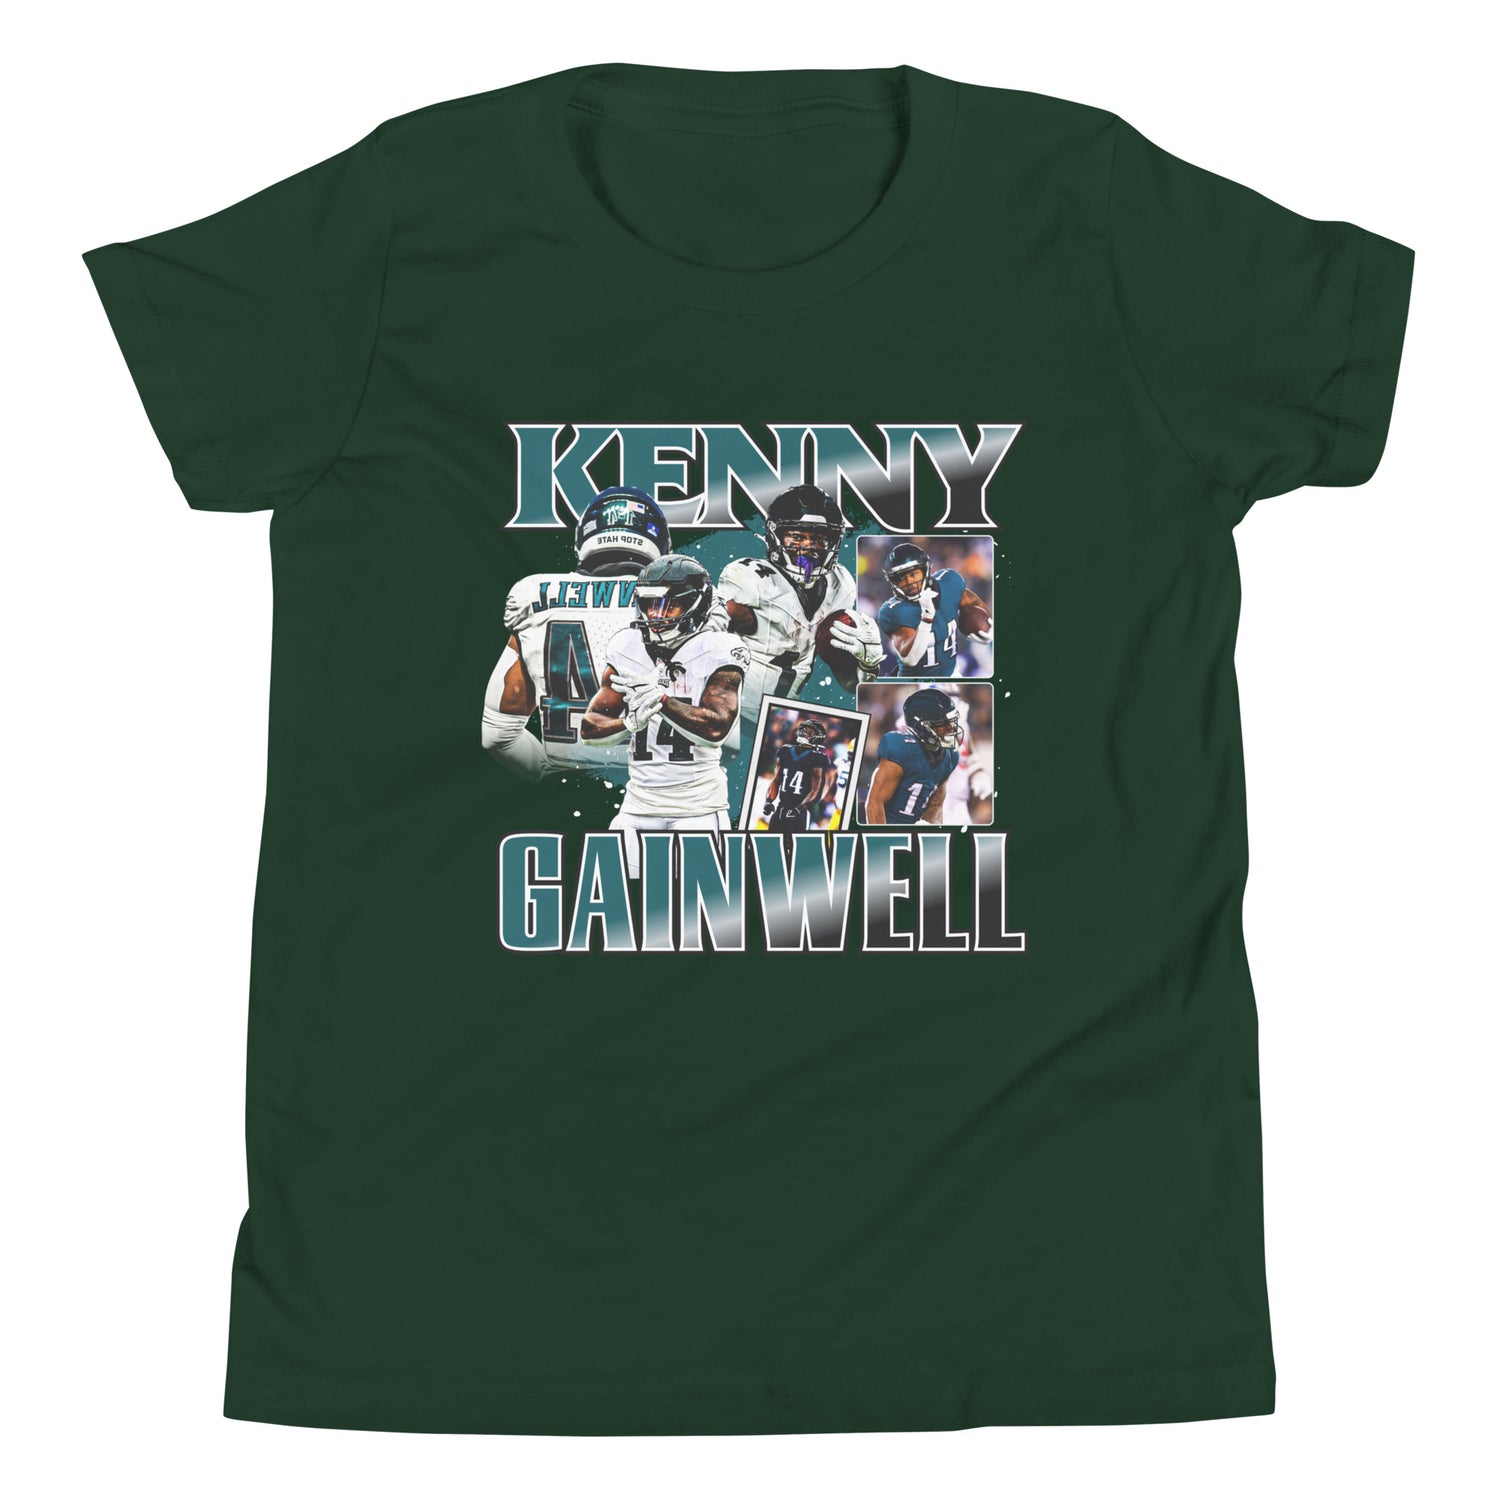 Kenneth Gainwell "Vintage" Youth T-Shirt - Fan Arch